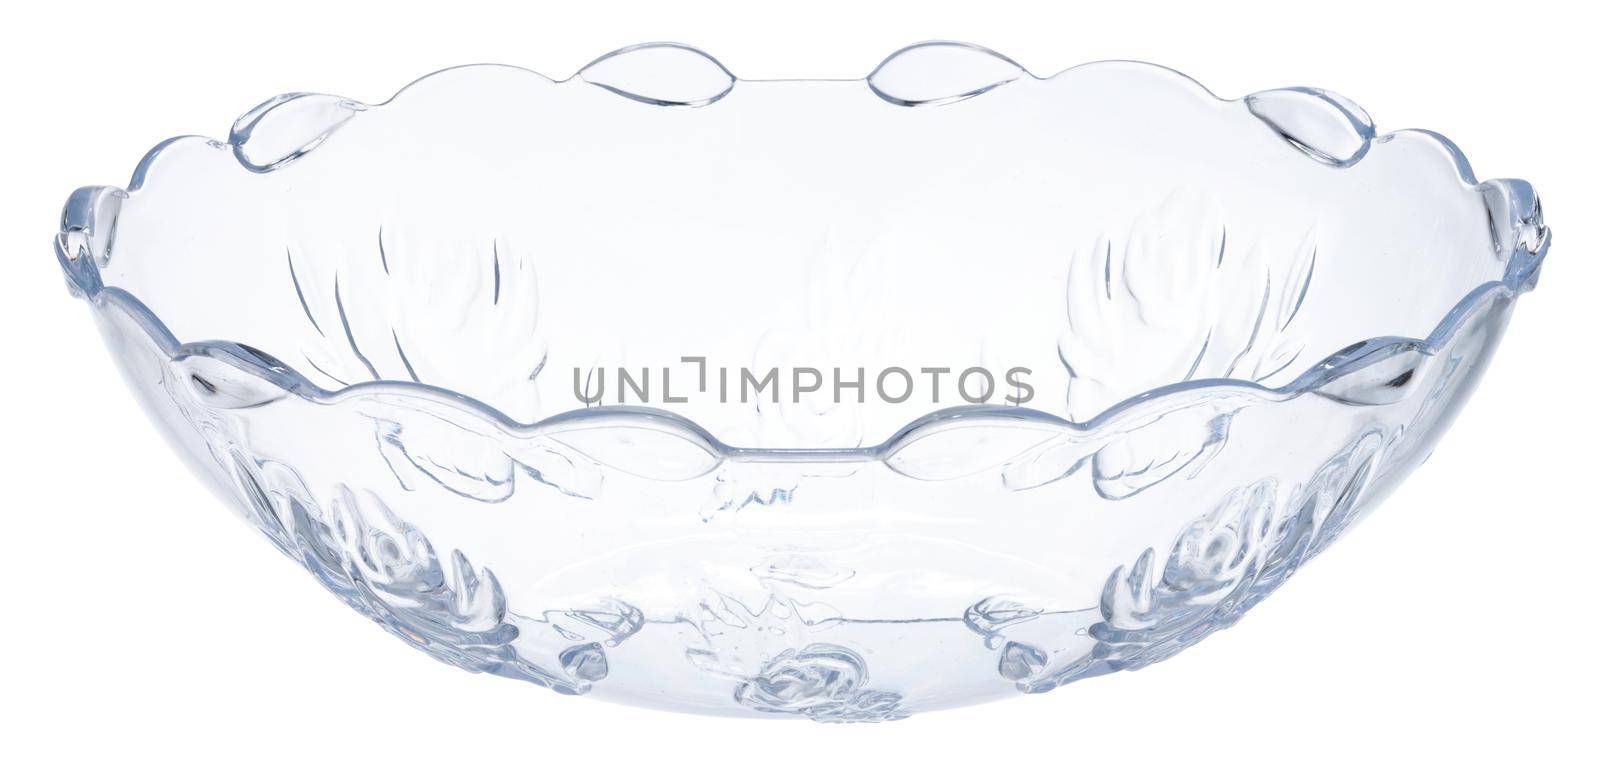 Stylish glass bowl dishware isolated on white background